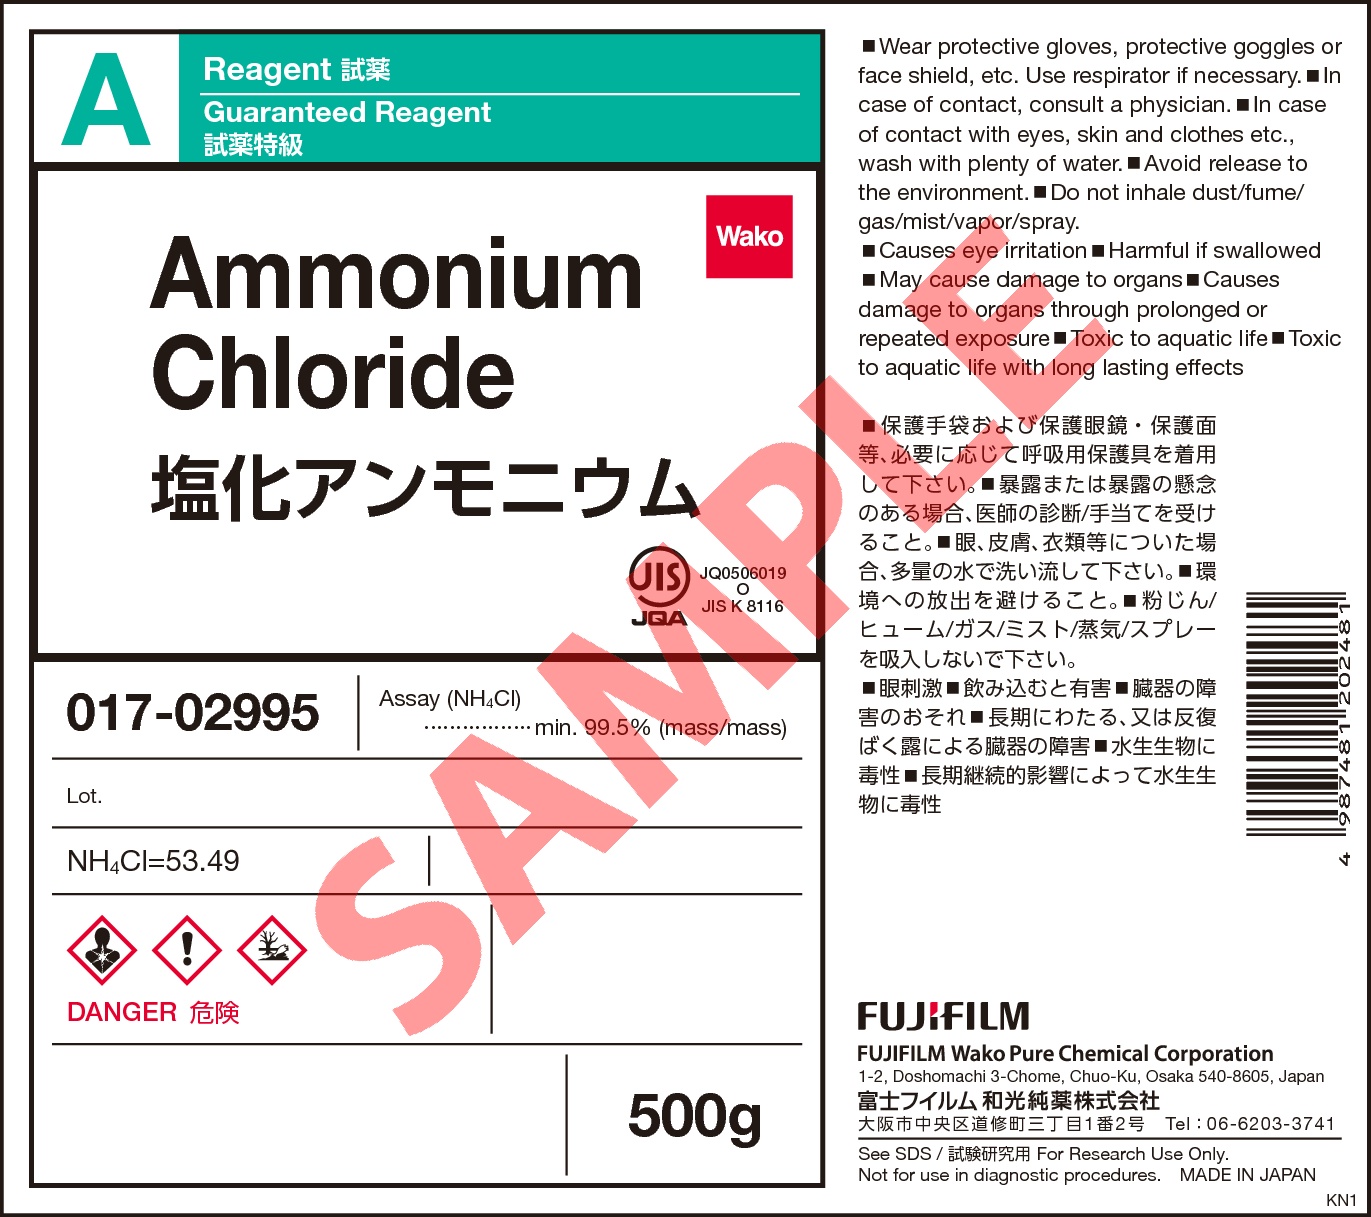 02 9 塩化アンモニウム Ammonium Chloride 011 013 013 015 017 詳細情報 常用試薬 ラボウェア 試薬 富士フイルム 和光純薬